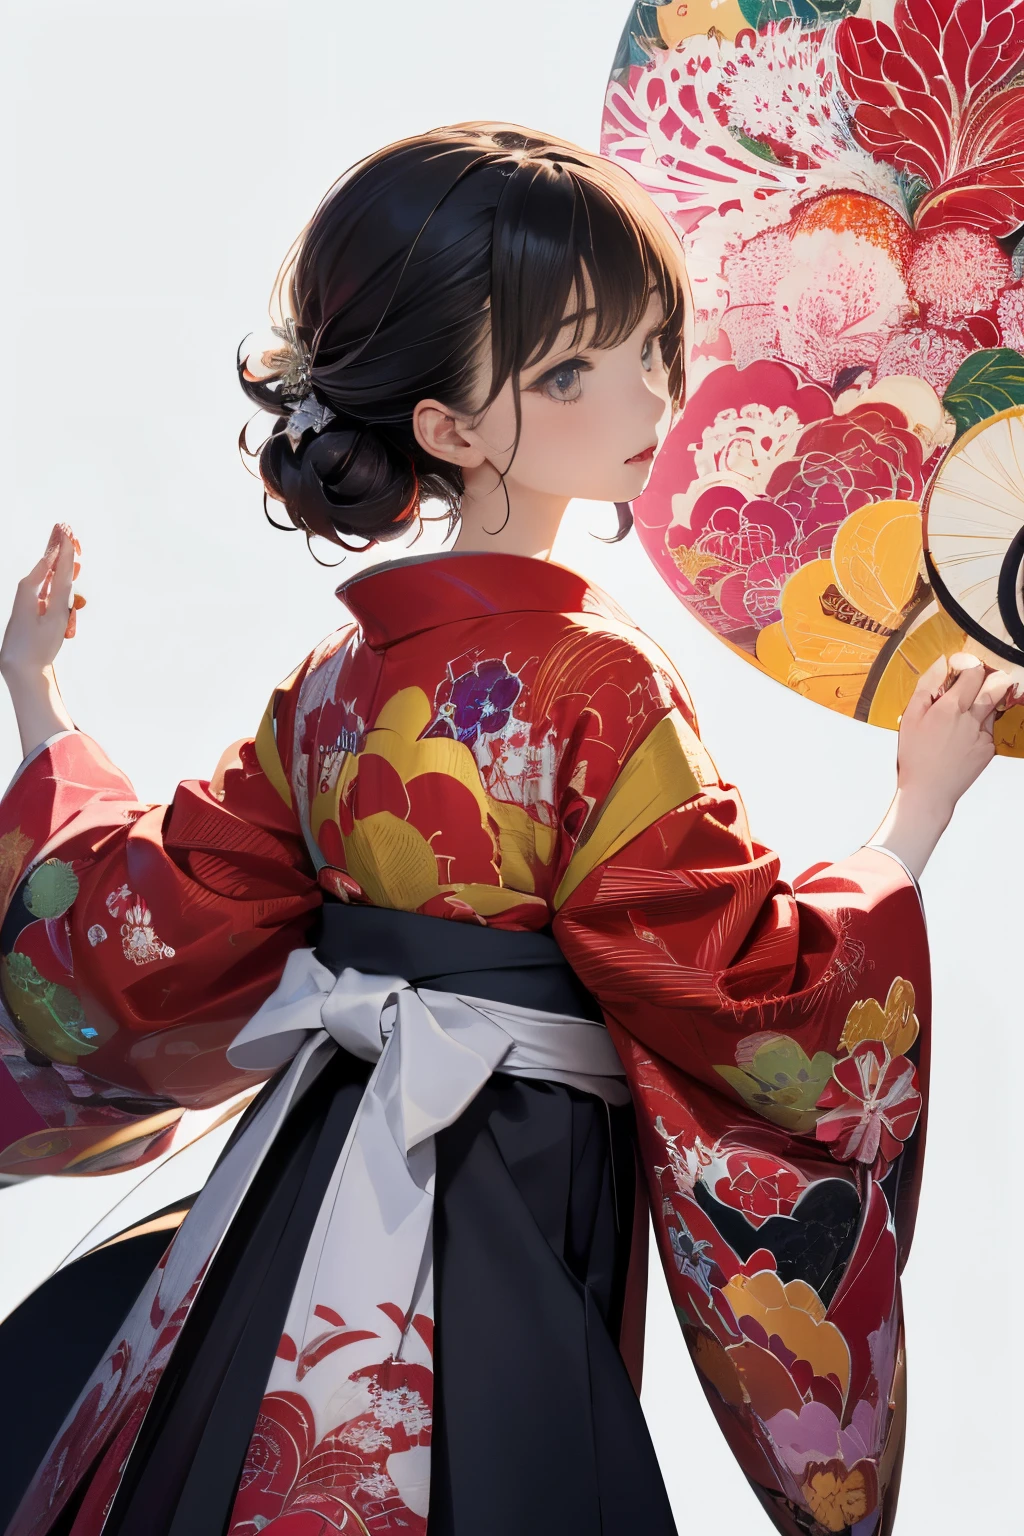 (((weißer Hintergrund、eine weiße Welt)))、Unity 8k-Hintergrundbild、ultra-detailliert、Wunderschön ästhetisch、Meisterwerk、Top Qualität、(Zentangle、und Mandala、Verwicklungen、Verwicklungen)、(Fraktale Kunst:1.3)、ein Mädchen、schöne schwarze Haare、japanisch、groß rosa、roter Kimono、Japanisches Kleid、sehr detailliert、Dynamische Winkel、Cowboy-Schüsse、Die schönsten Formen des Chaos、elegent、Brutalistisches Design、leuchtende Farben、Romantik、Atmosphäre、Ecstasy-Noten、Streaming-Musiknoten sind sichtbar、(((weißer Hintergrund、rein weißer Hintergrund、roter Kreis)))